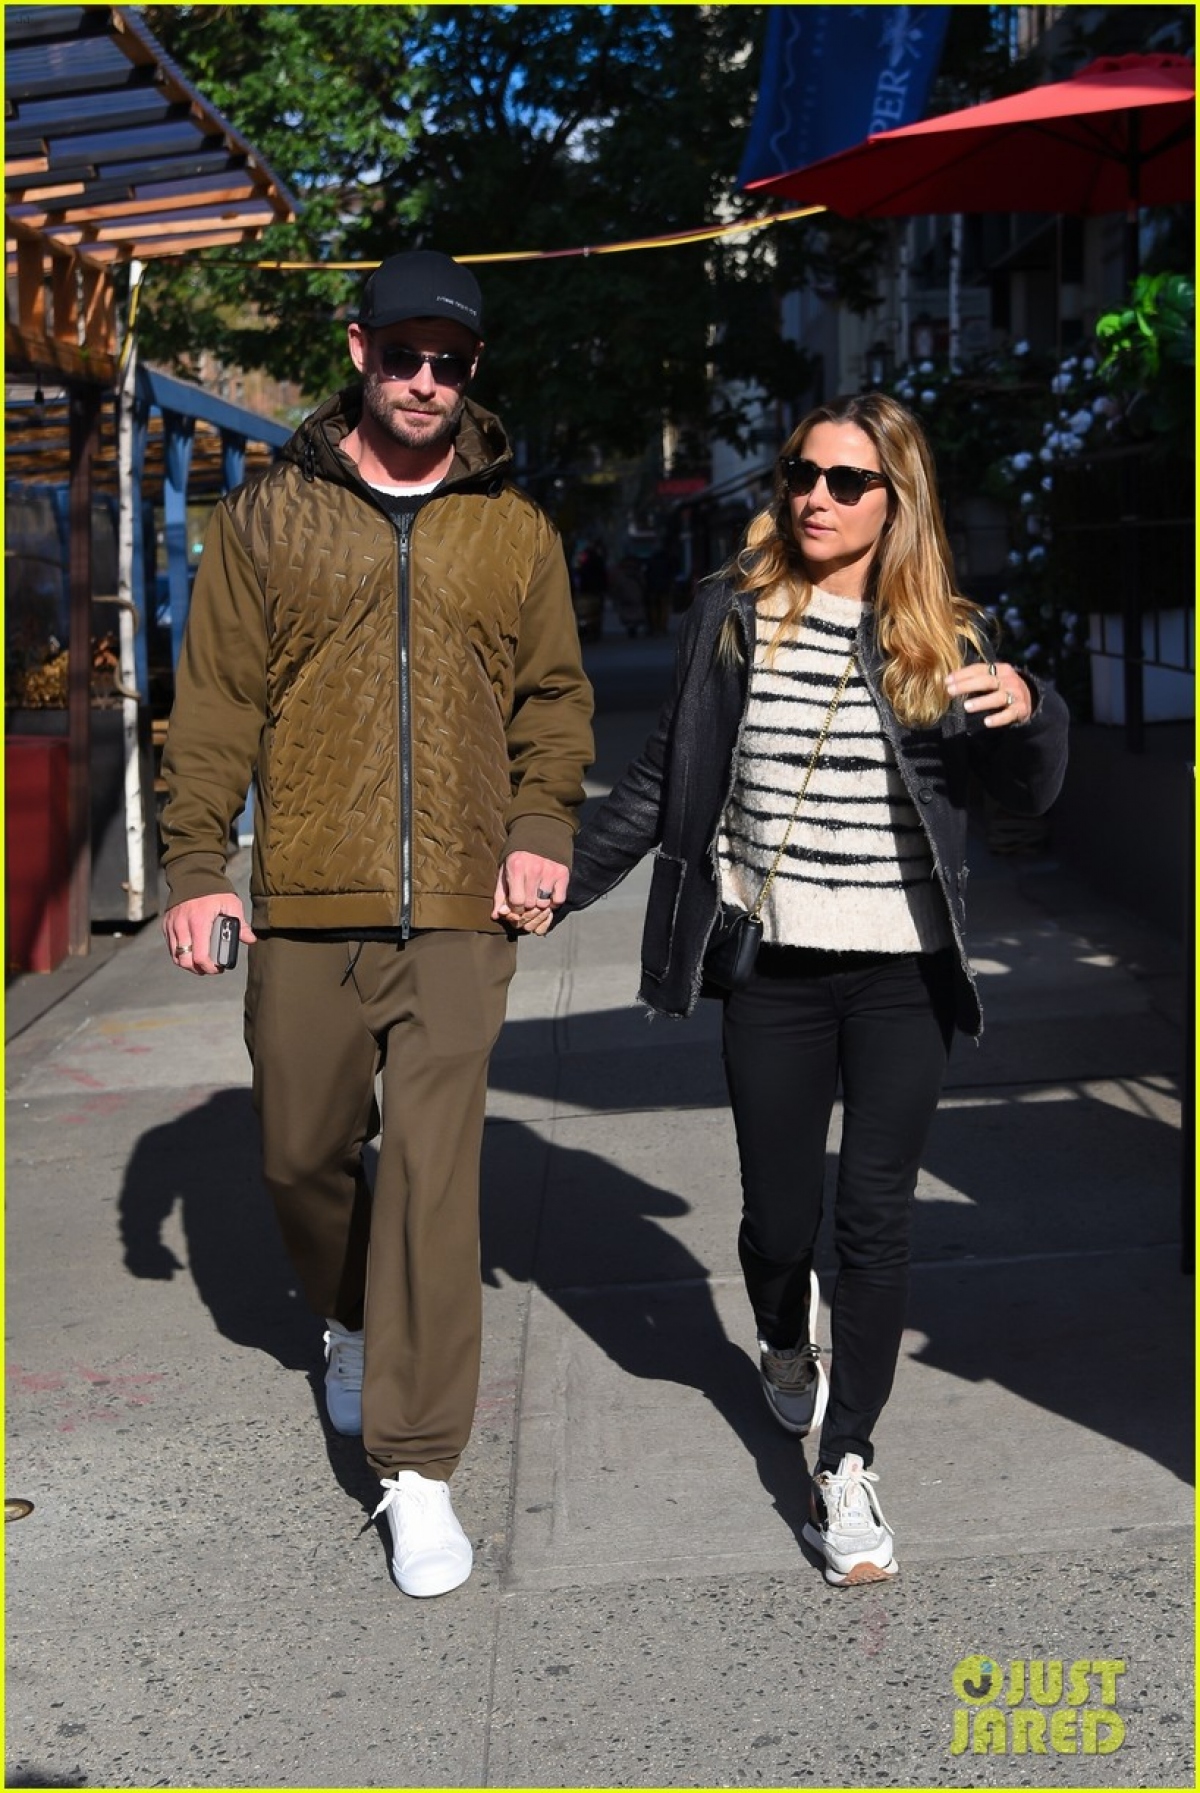 Thần sấm Chris Hemsworth và vợ hơn 7 tuổi nắm tay tình cảm đi dạo phố - Ảnh 7.